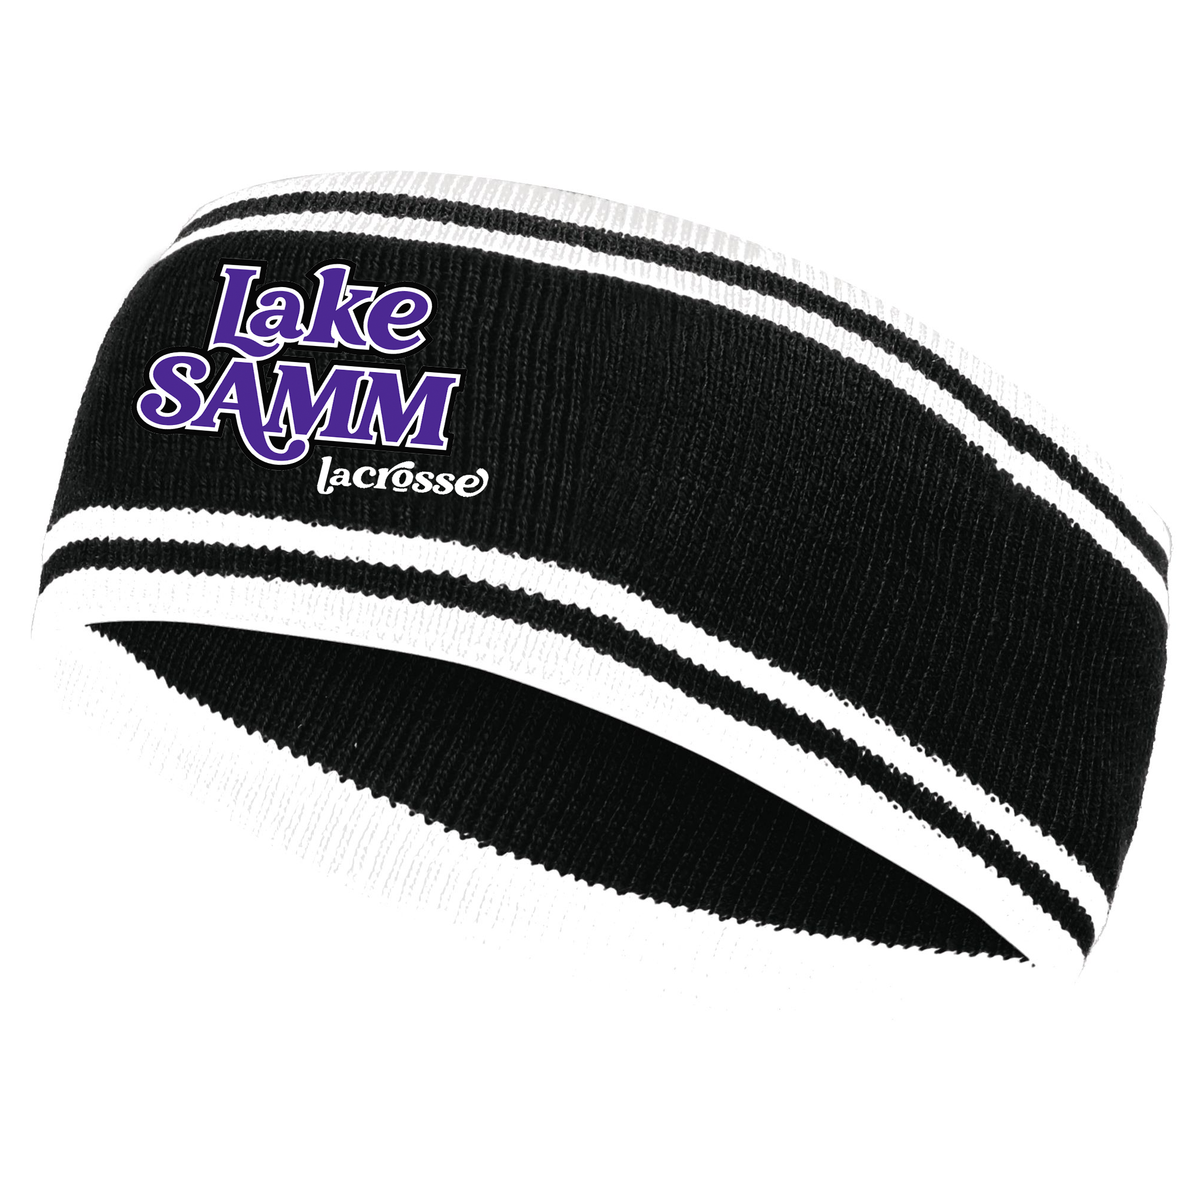 Lake Samm Lacrosse Homecoming Knit Headband